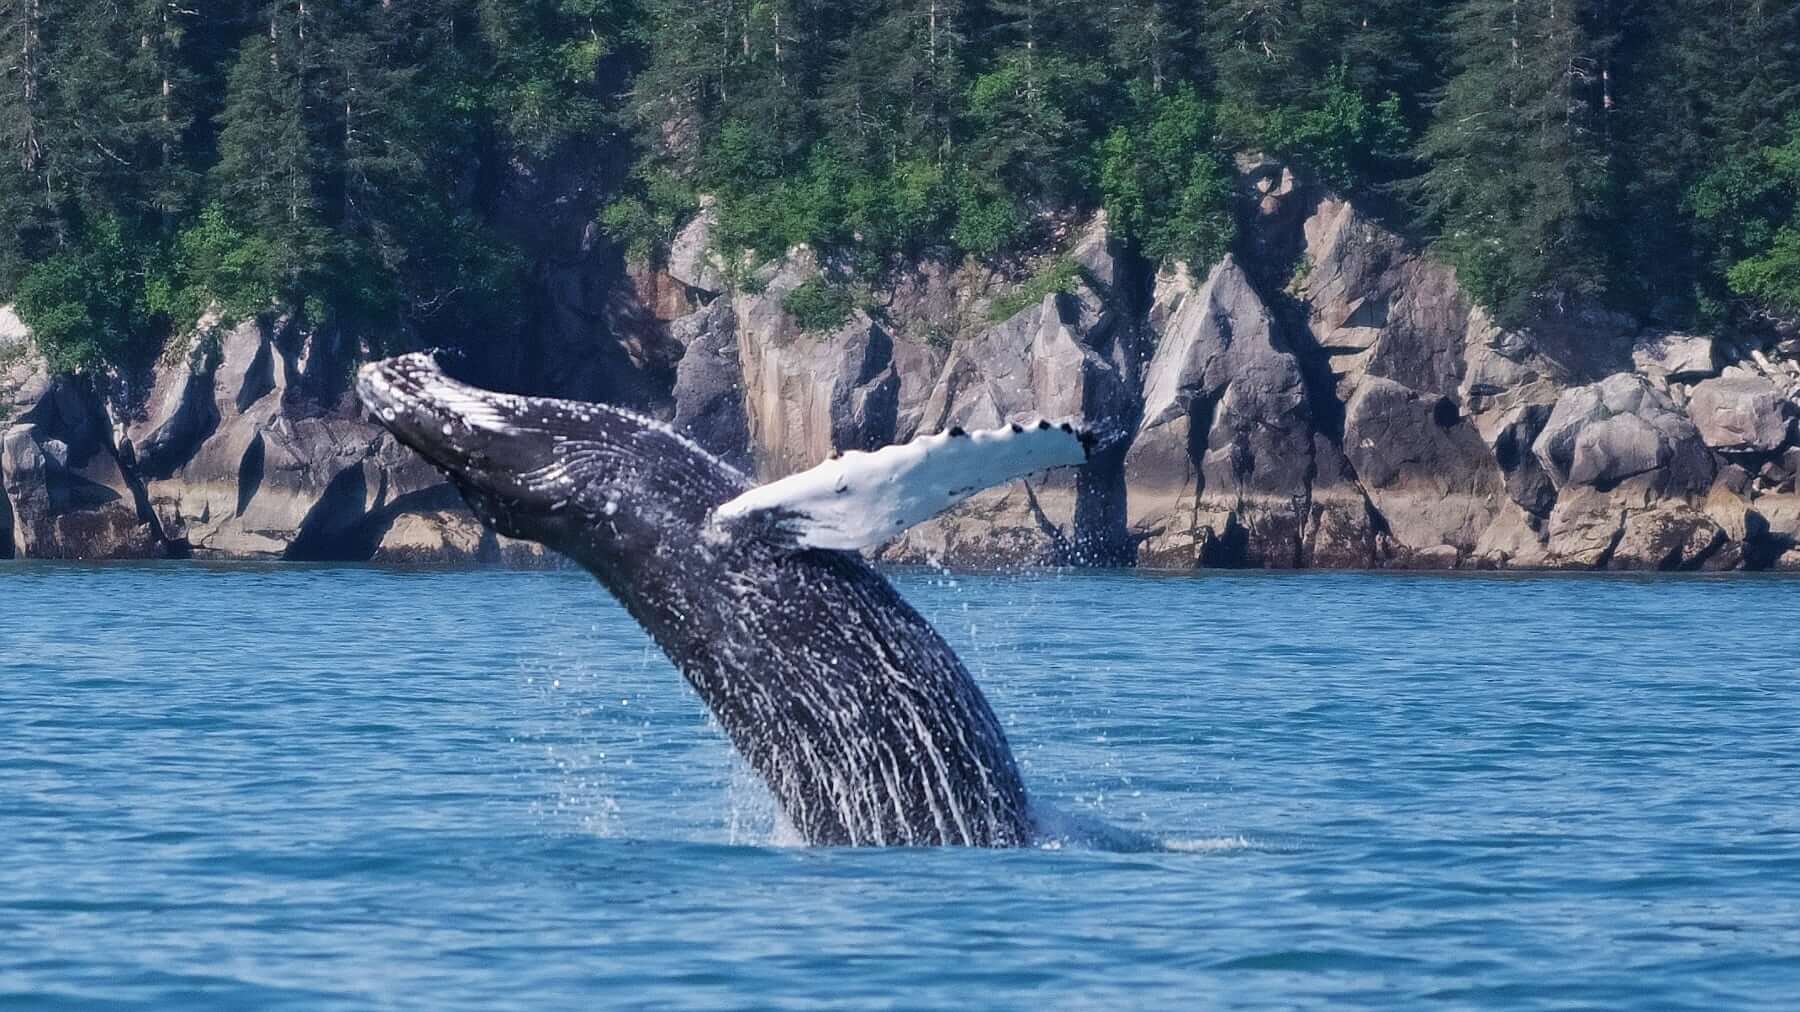 Humback whale breaching